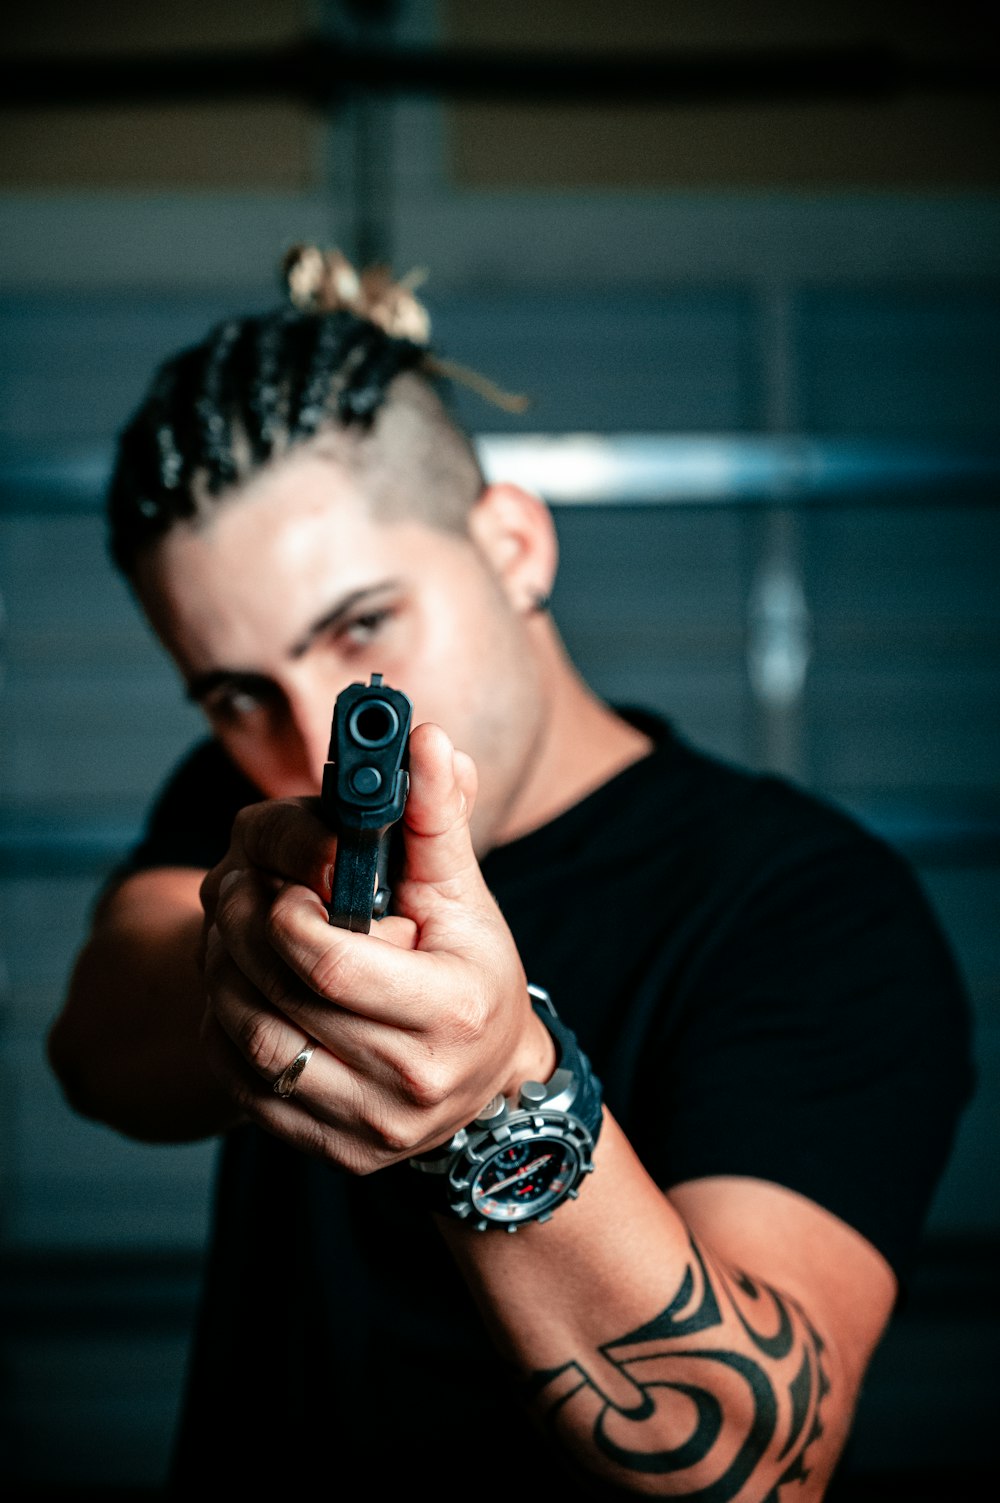 man aiming gun photo